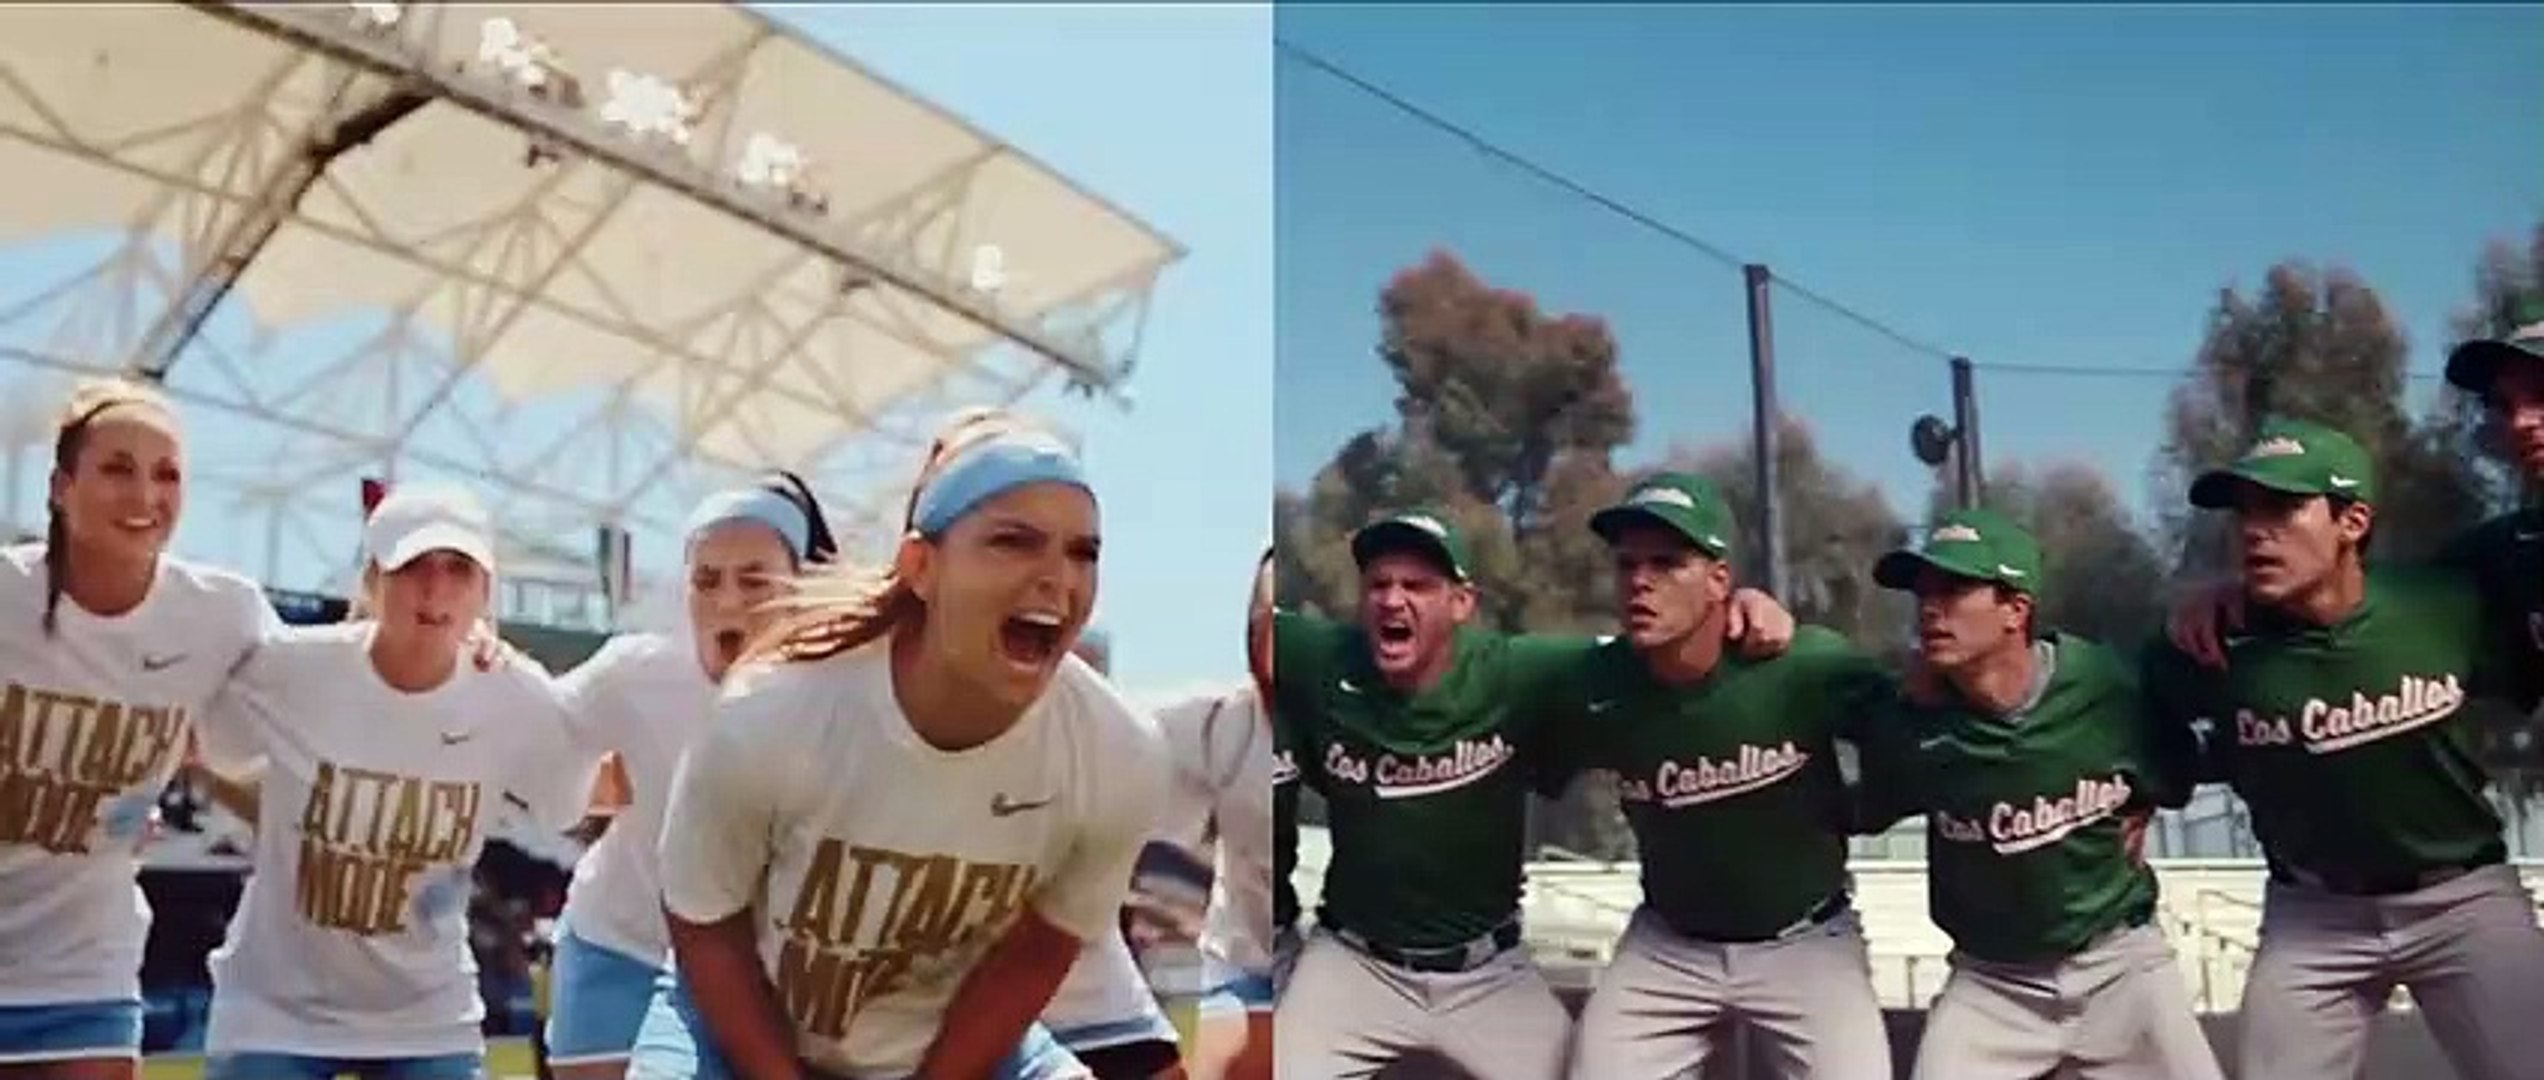 Le nouveau spot de pub de Nike : "You Can't Stop Us" - Vidéo Dailymotion